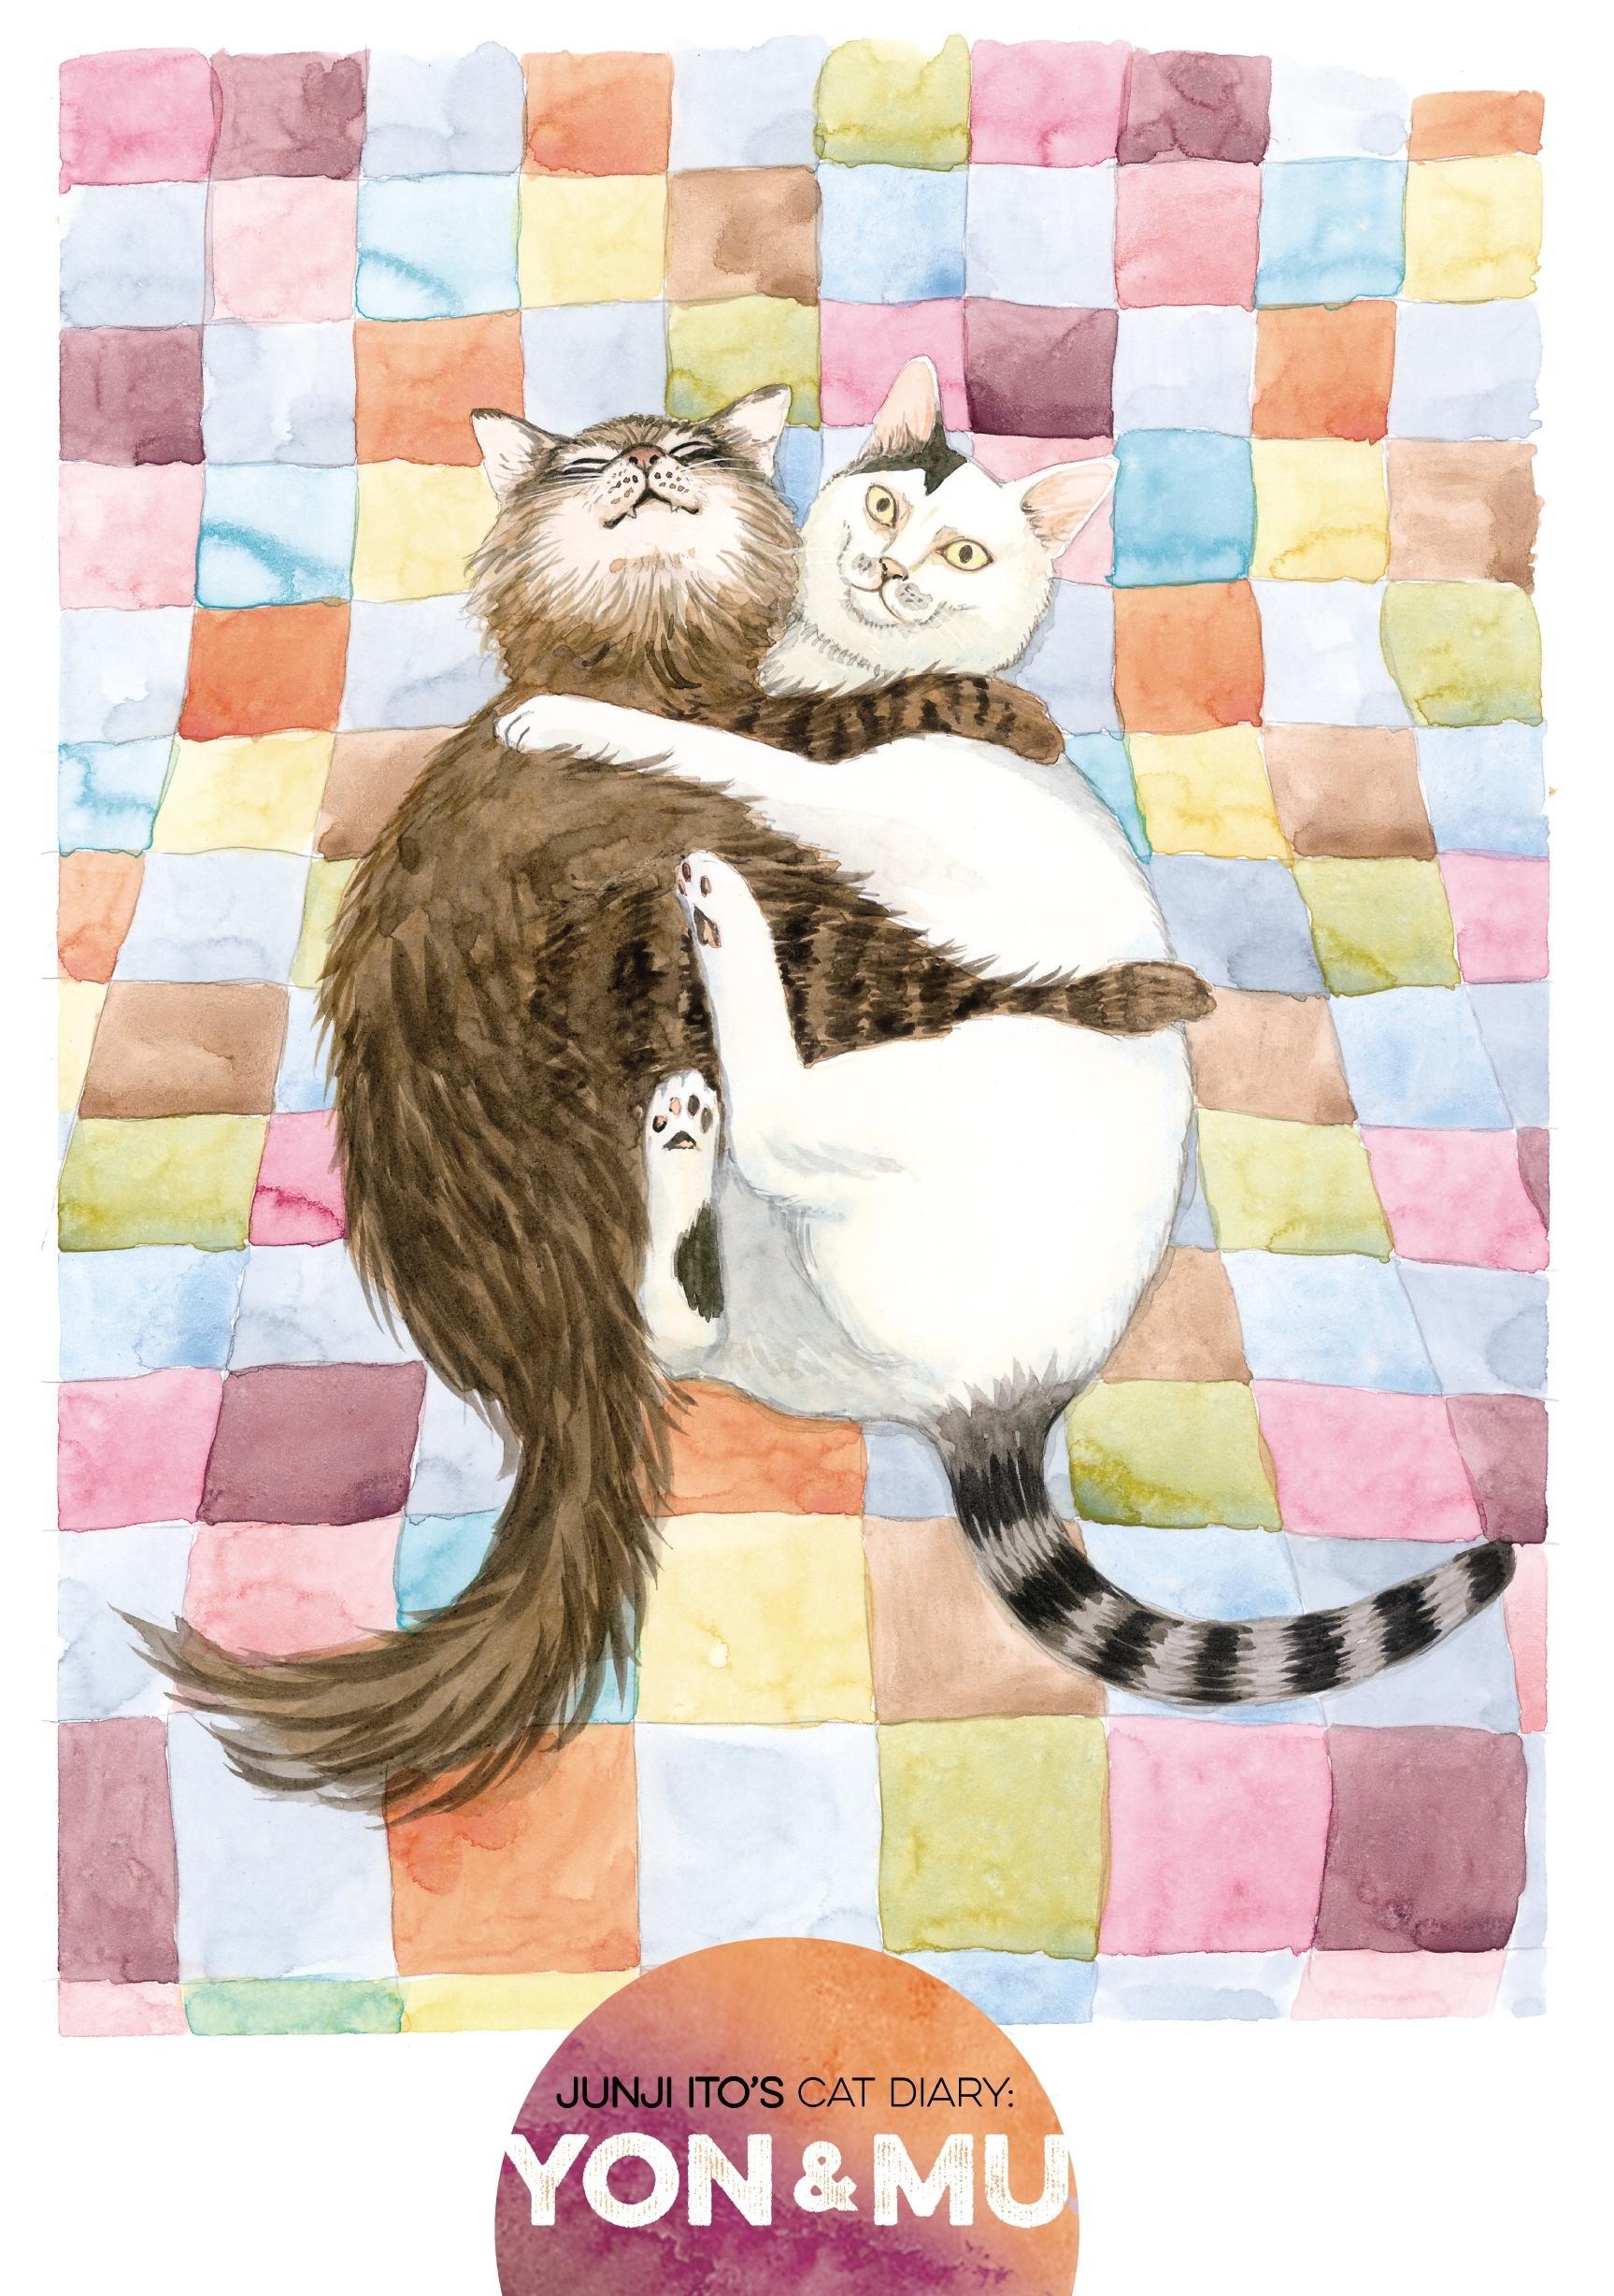 Download Best Junji Ito Cat Diary Wallpaper